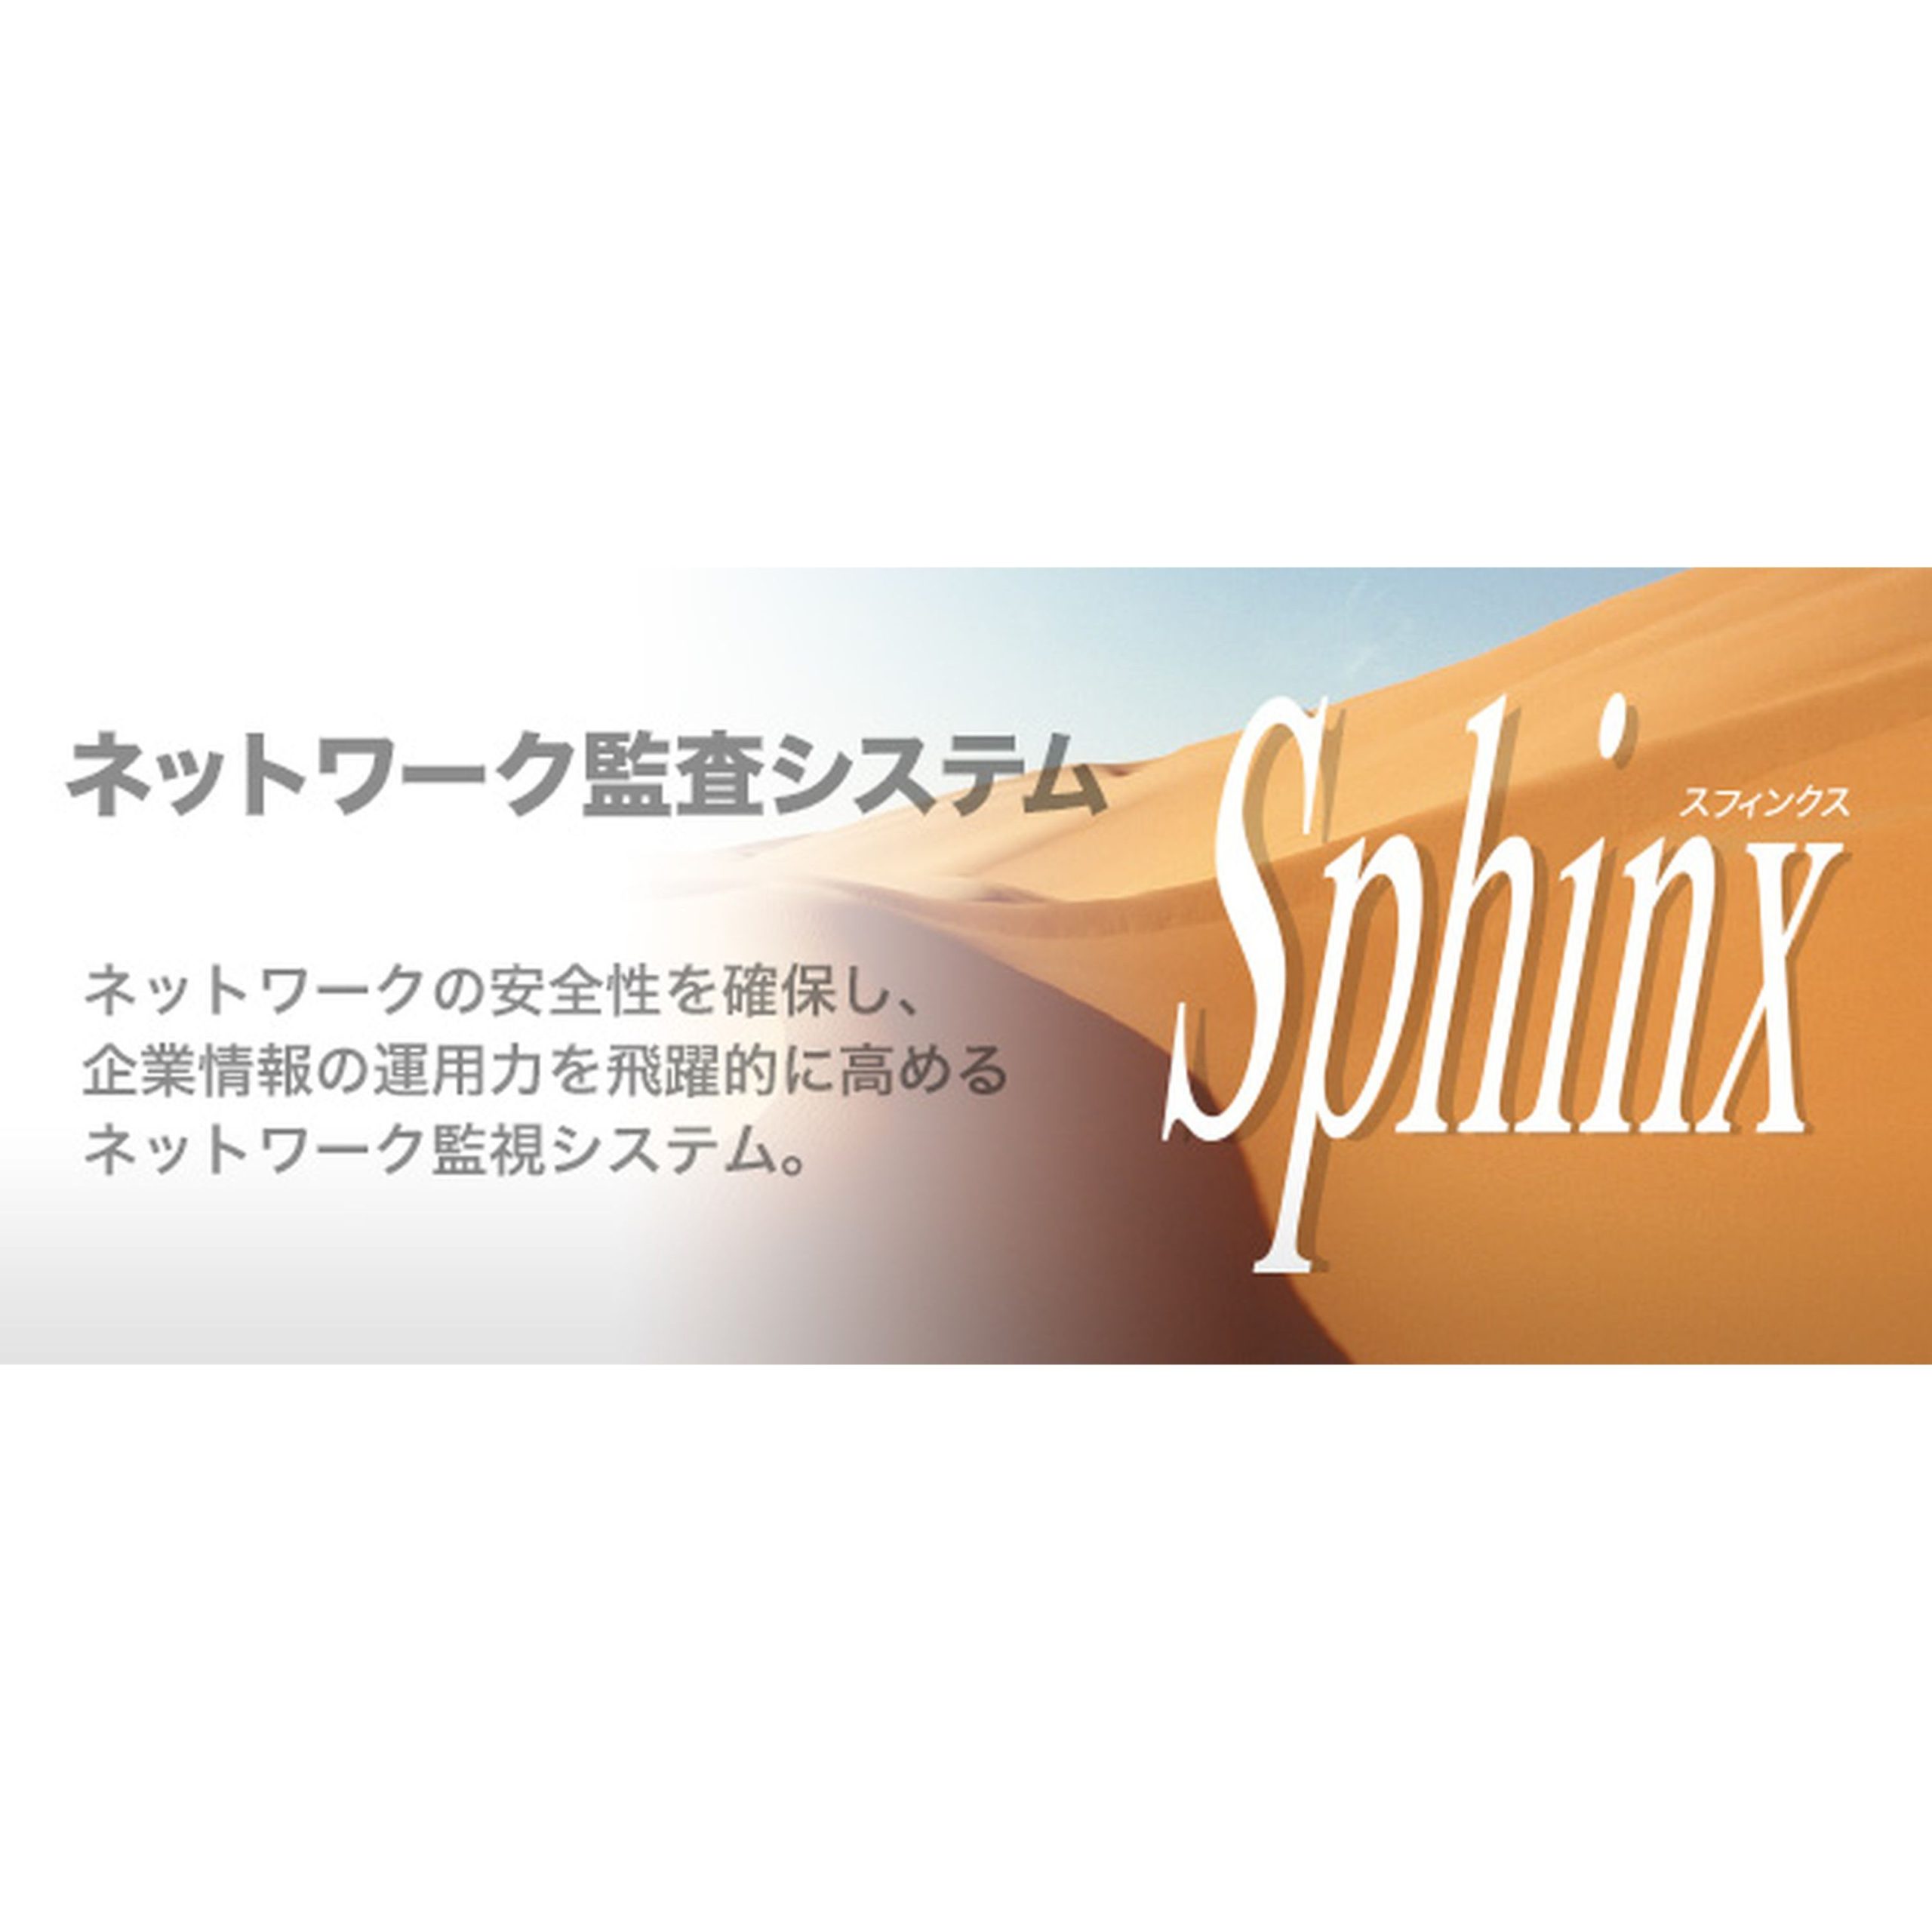 ネットワーク監視システム Sphinx